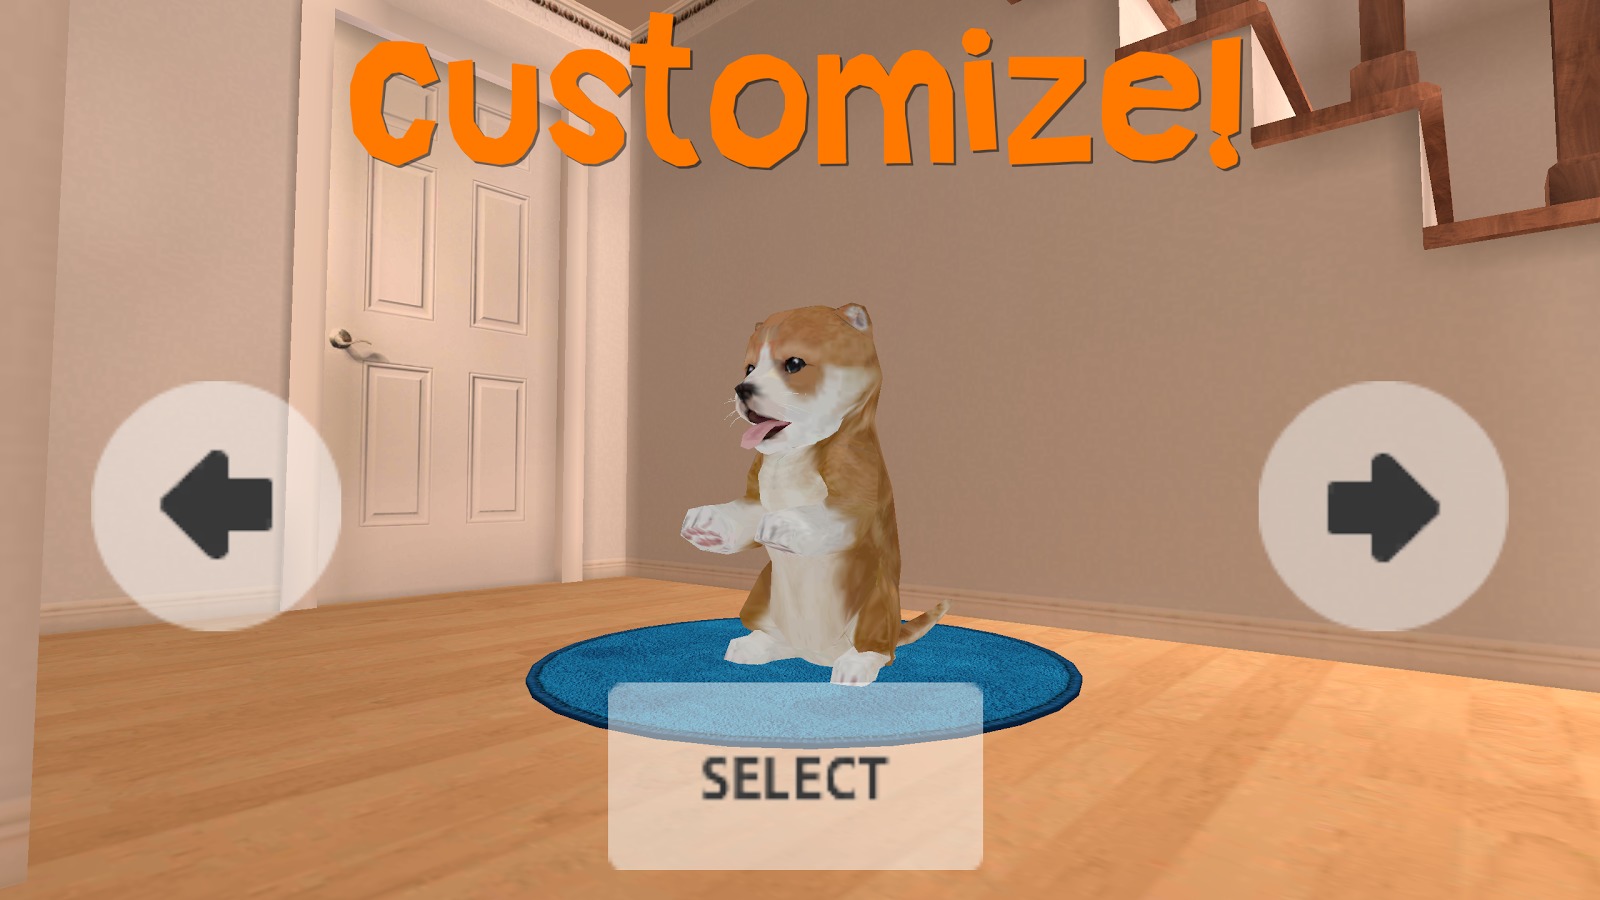 Dog Simulator截图2